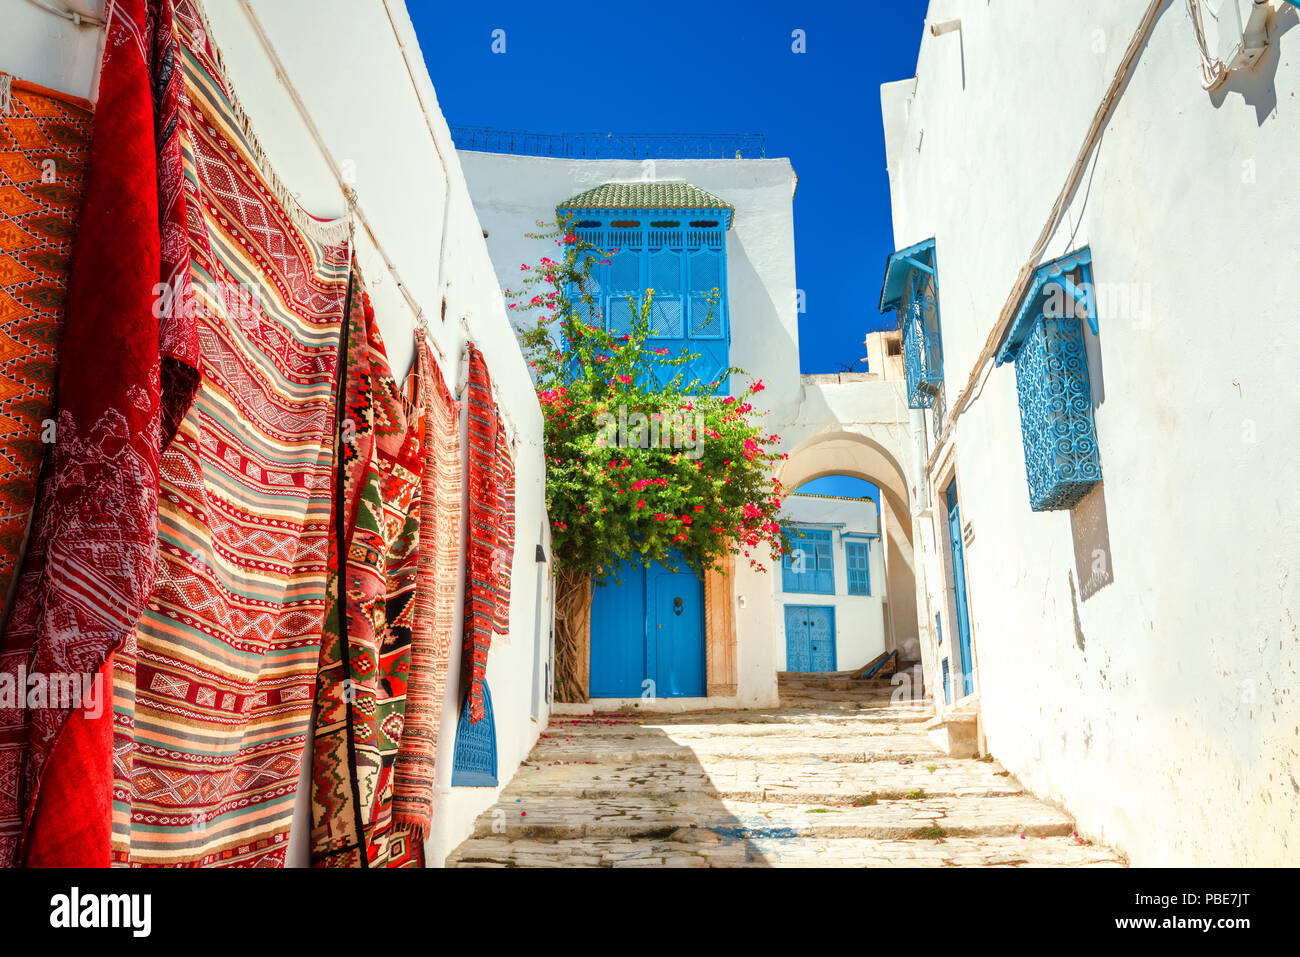 Street in white blue town Sidi Bou Said. Tunisia, North Africa Stock Photo